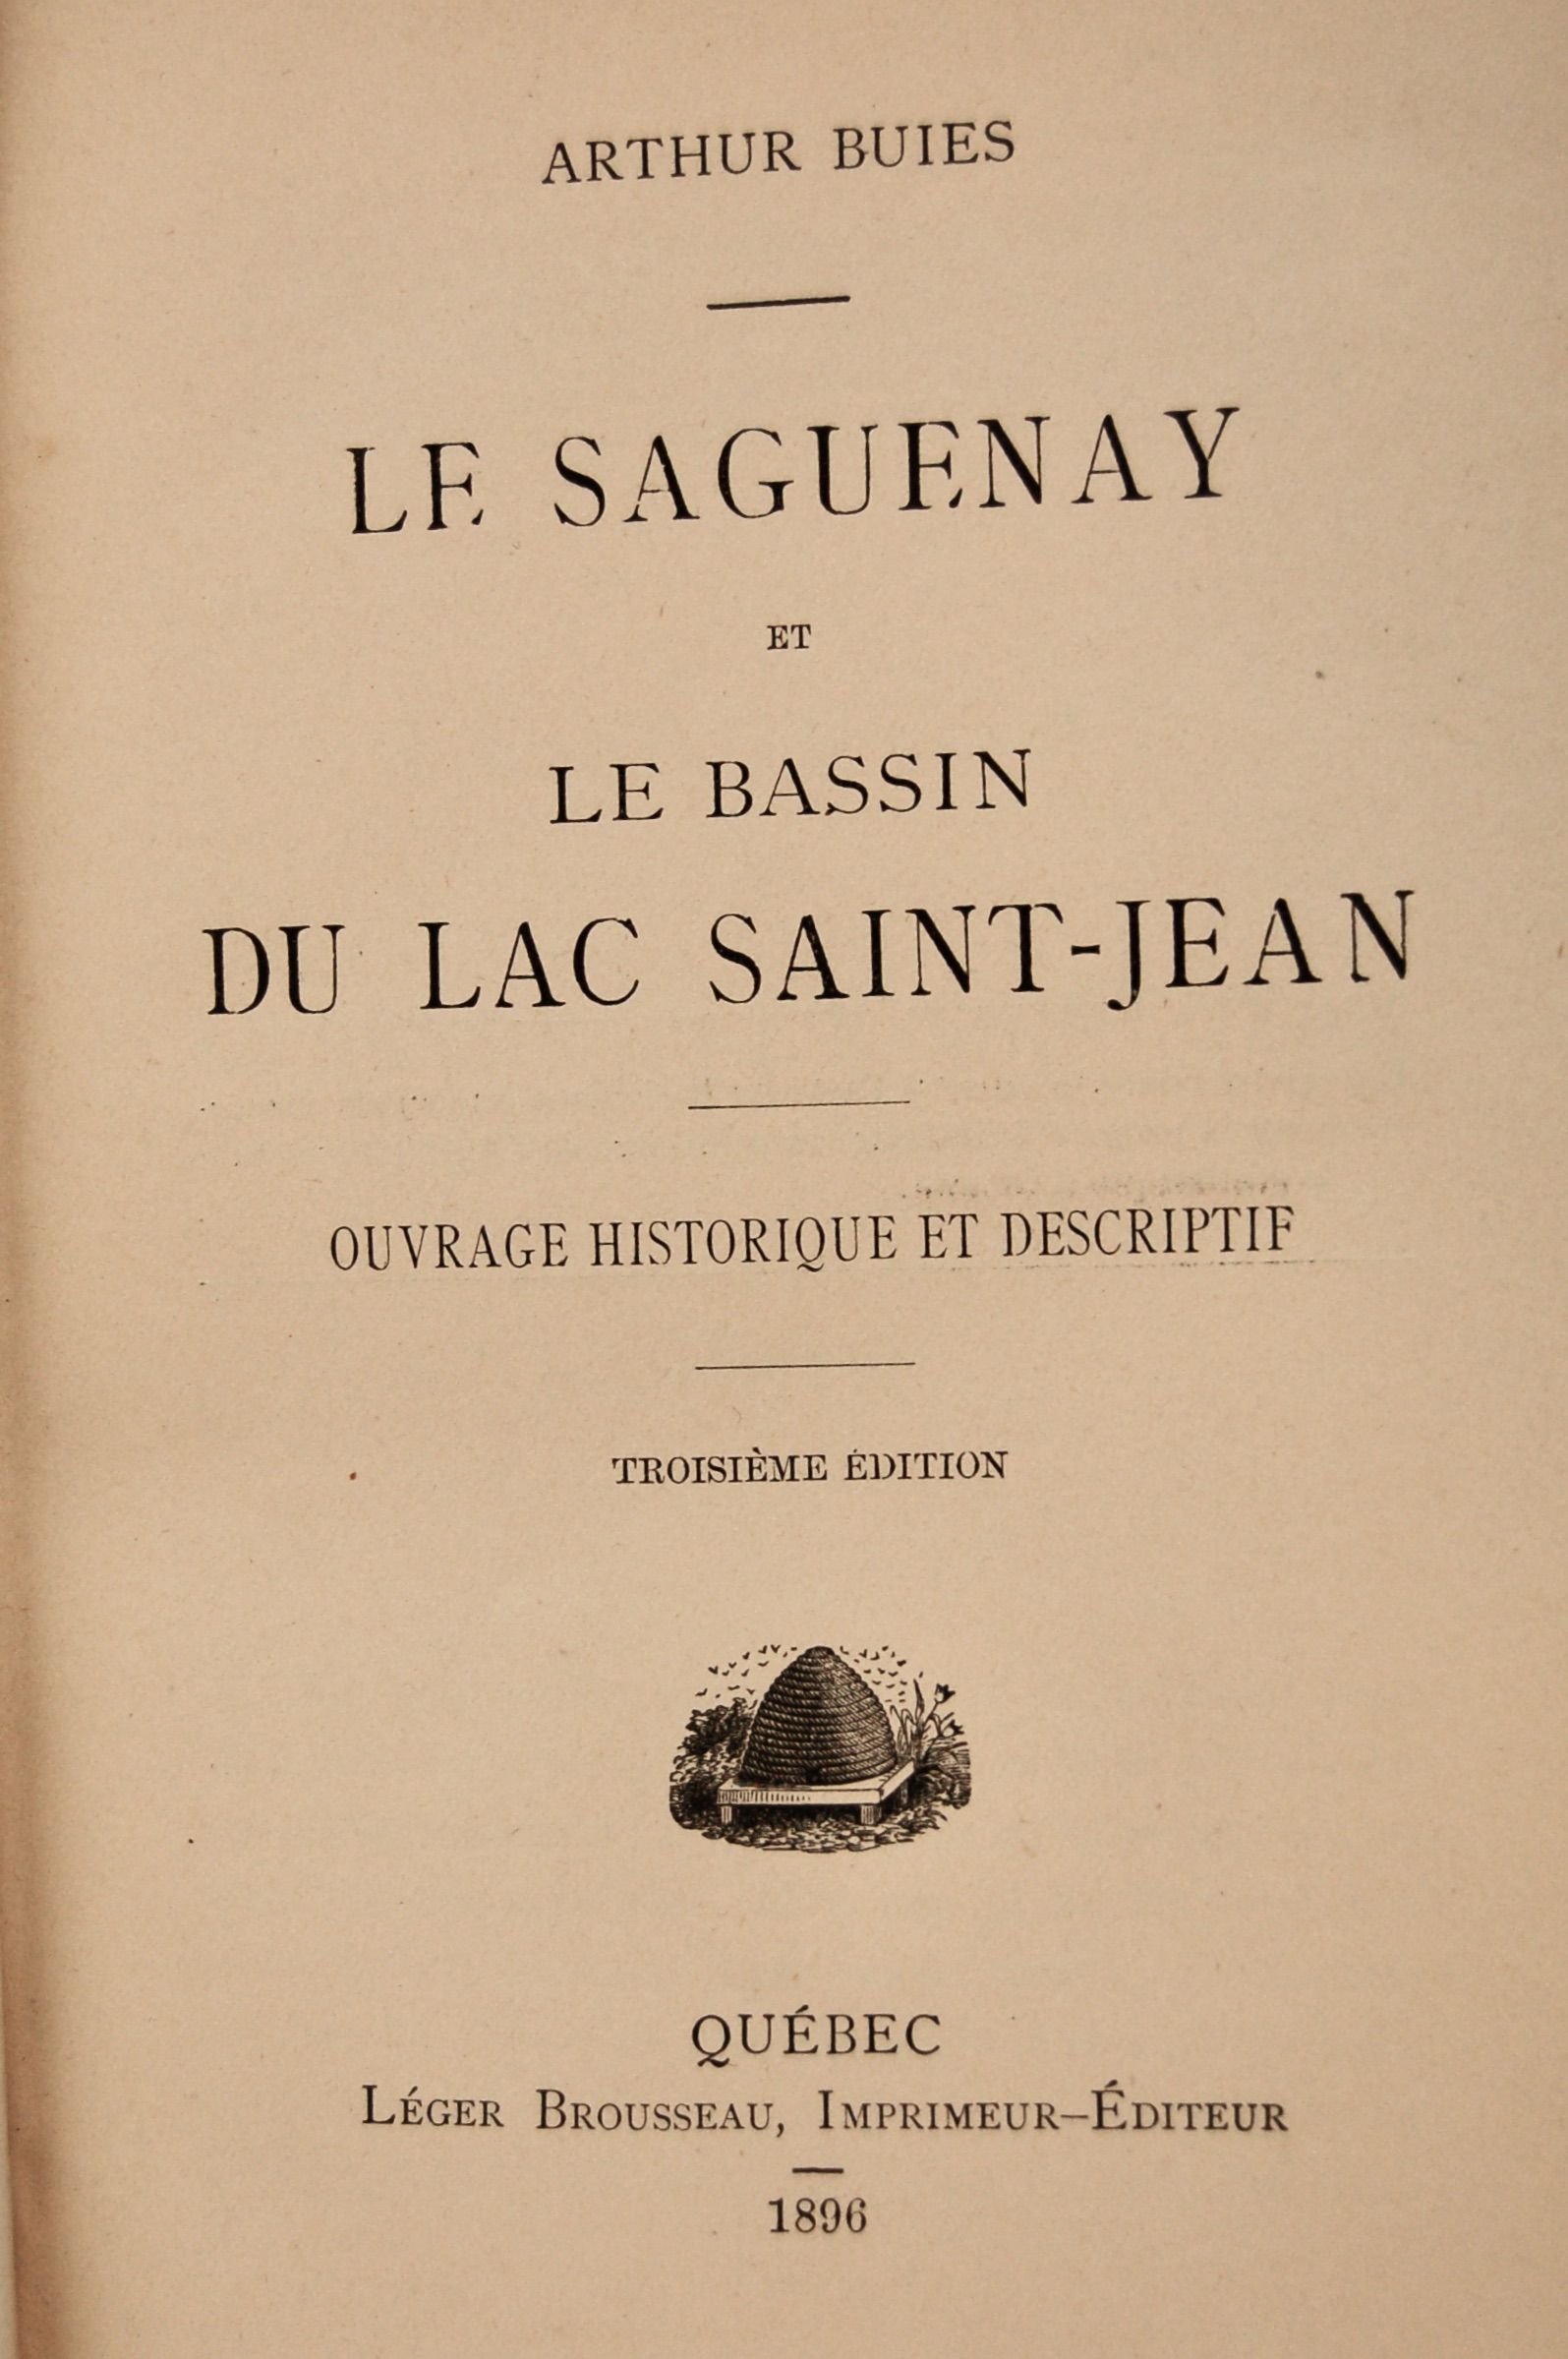 Le Saguenay et la Bassin du Lac Saint-Jean, Ouvrage Historique et Descriptif. 